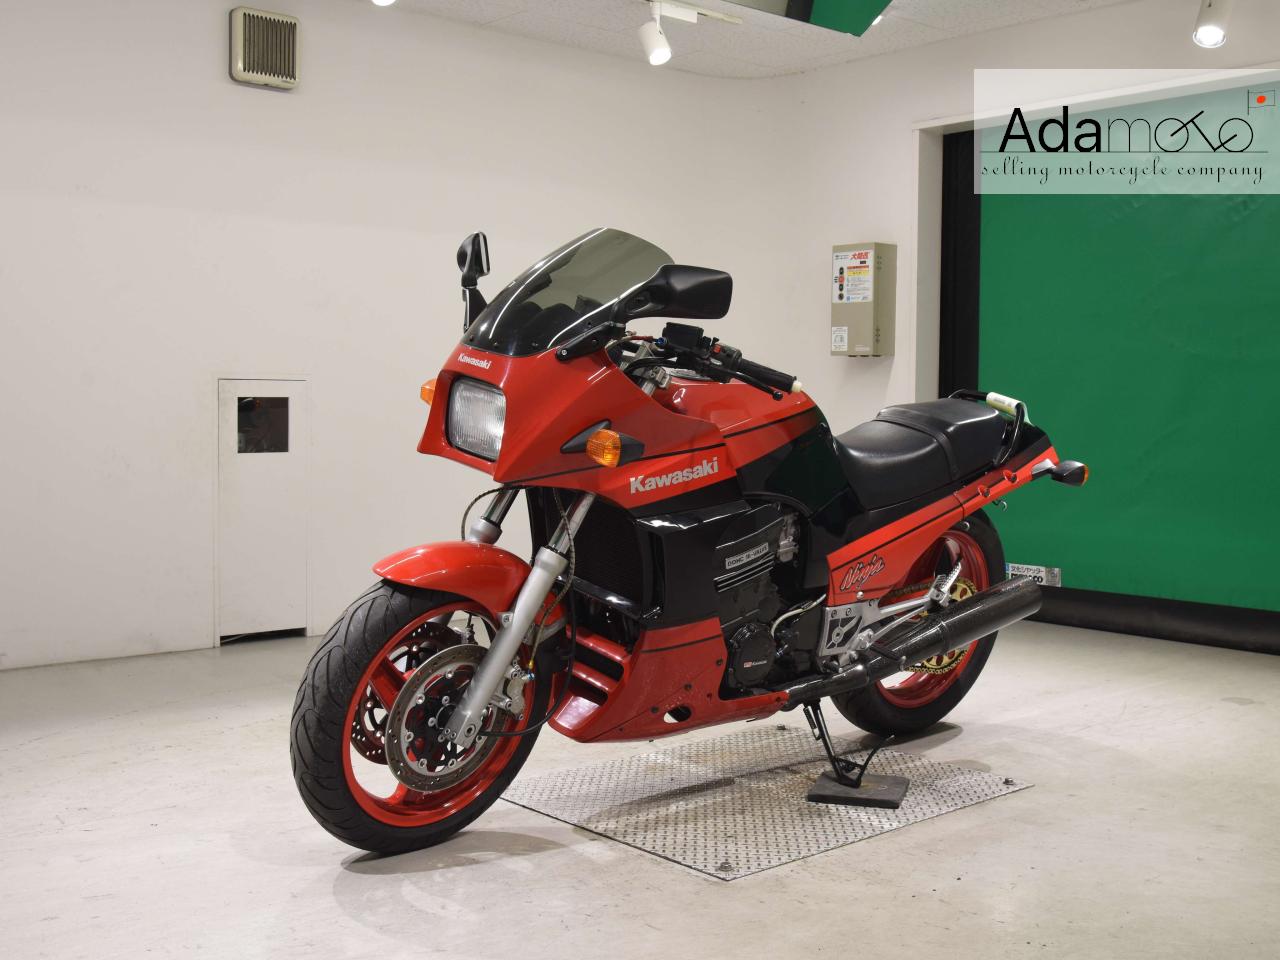 Kawasaki GPZ900R - Adamoto - Motorcycles from Japan